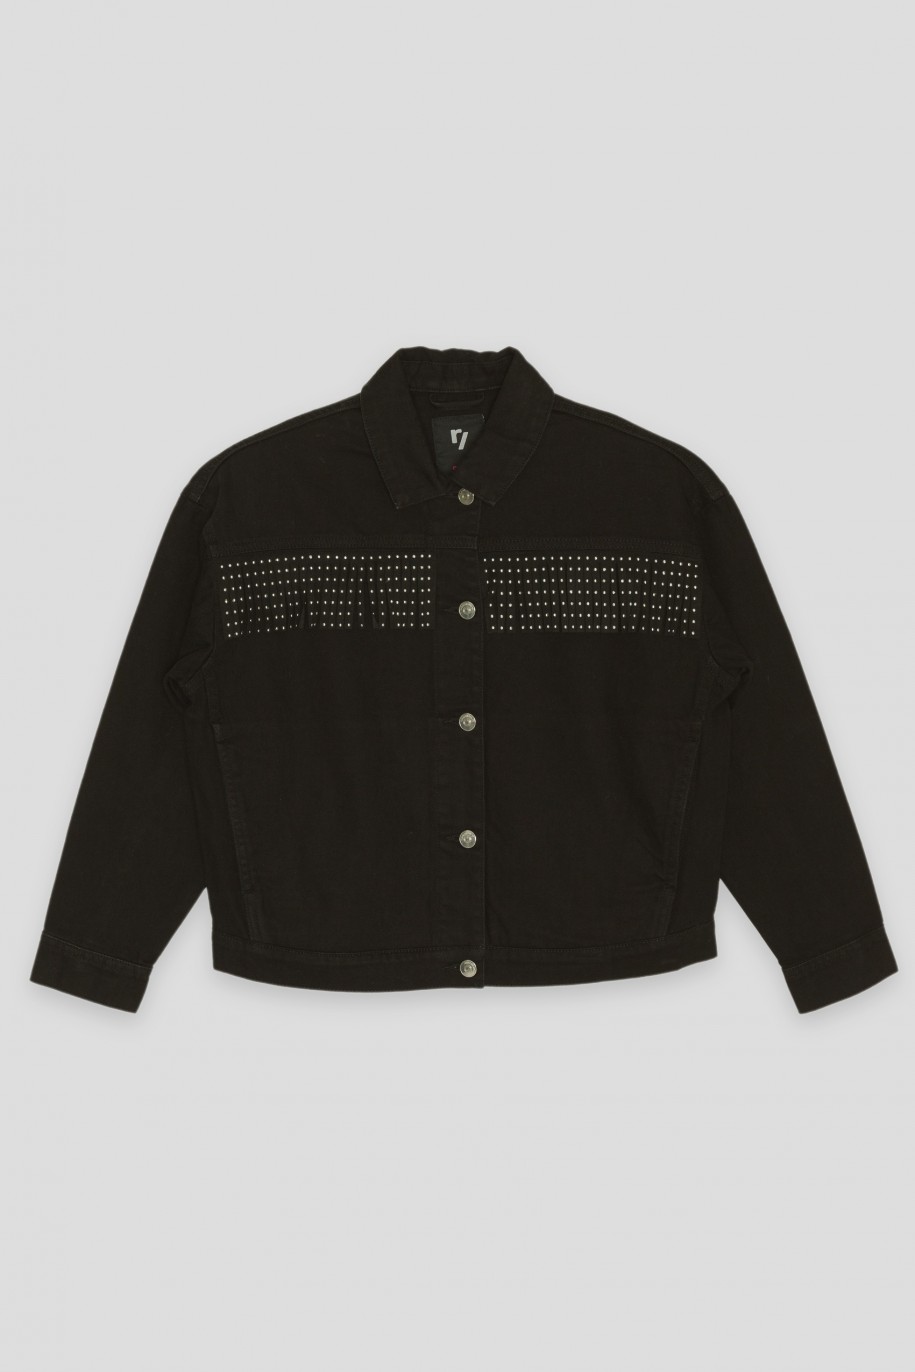 Czarna jeansowa kurtka przejściowa z ozdobnymi frędzlami - 40917